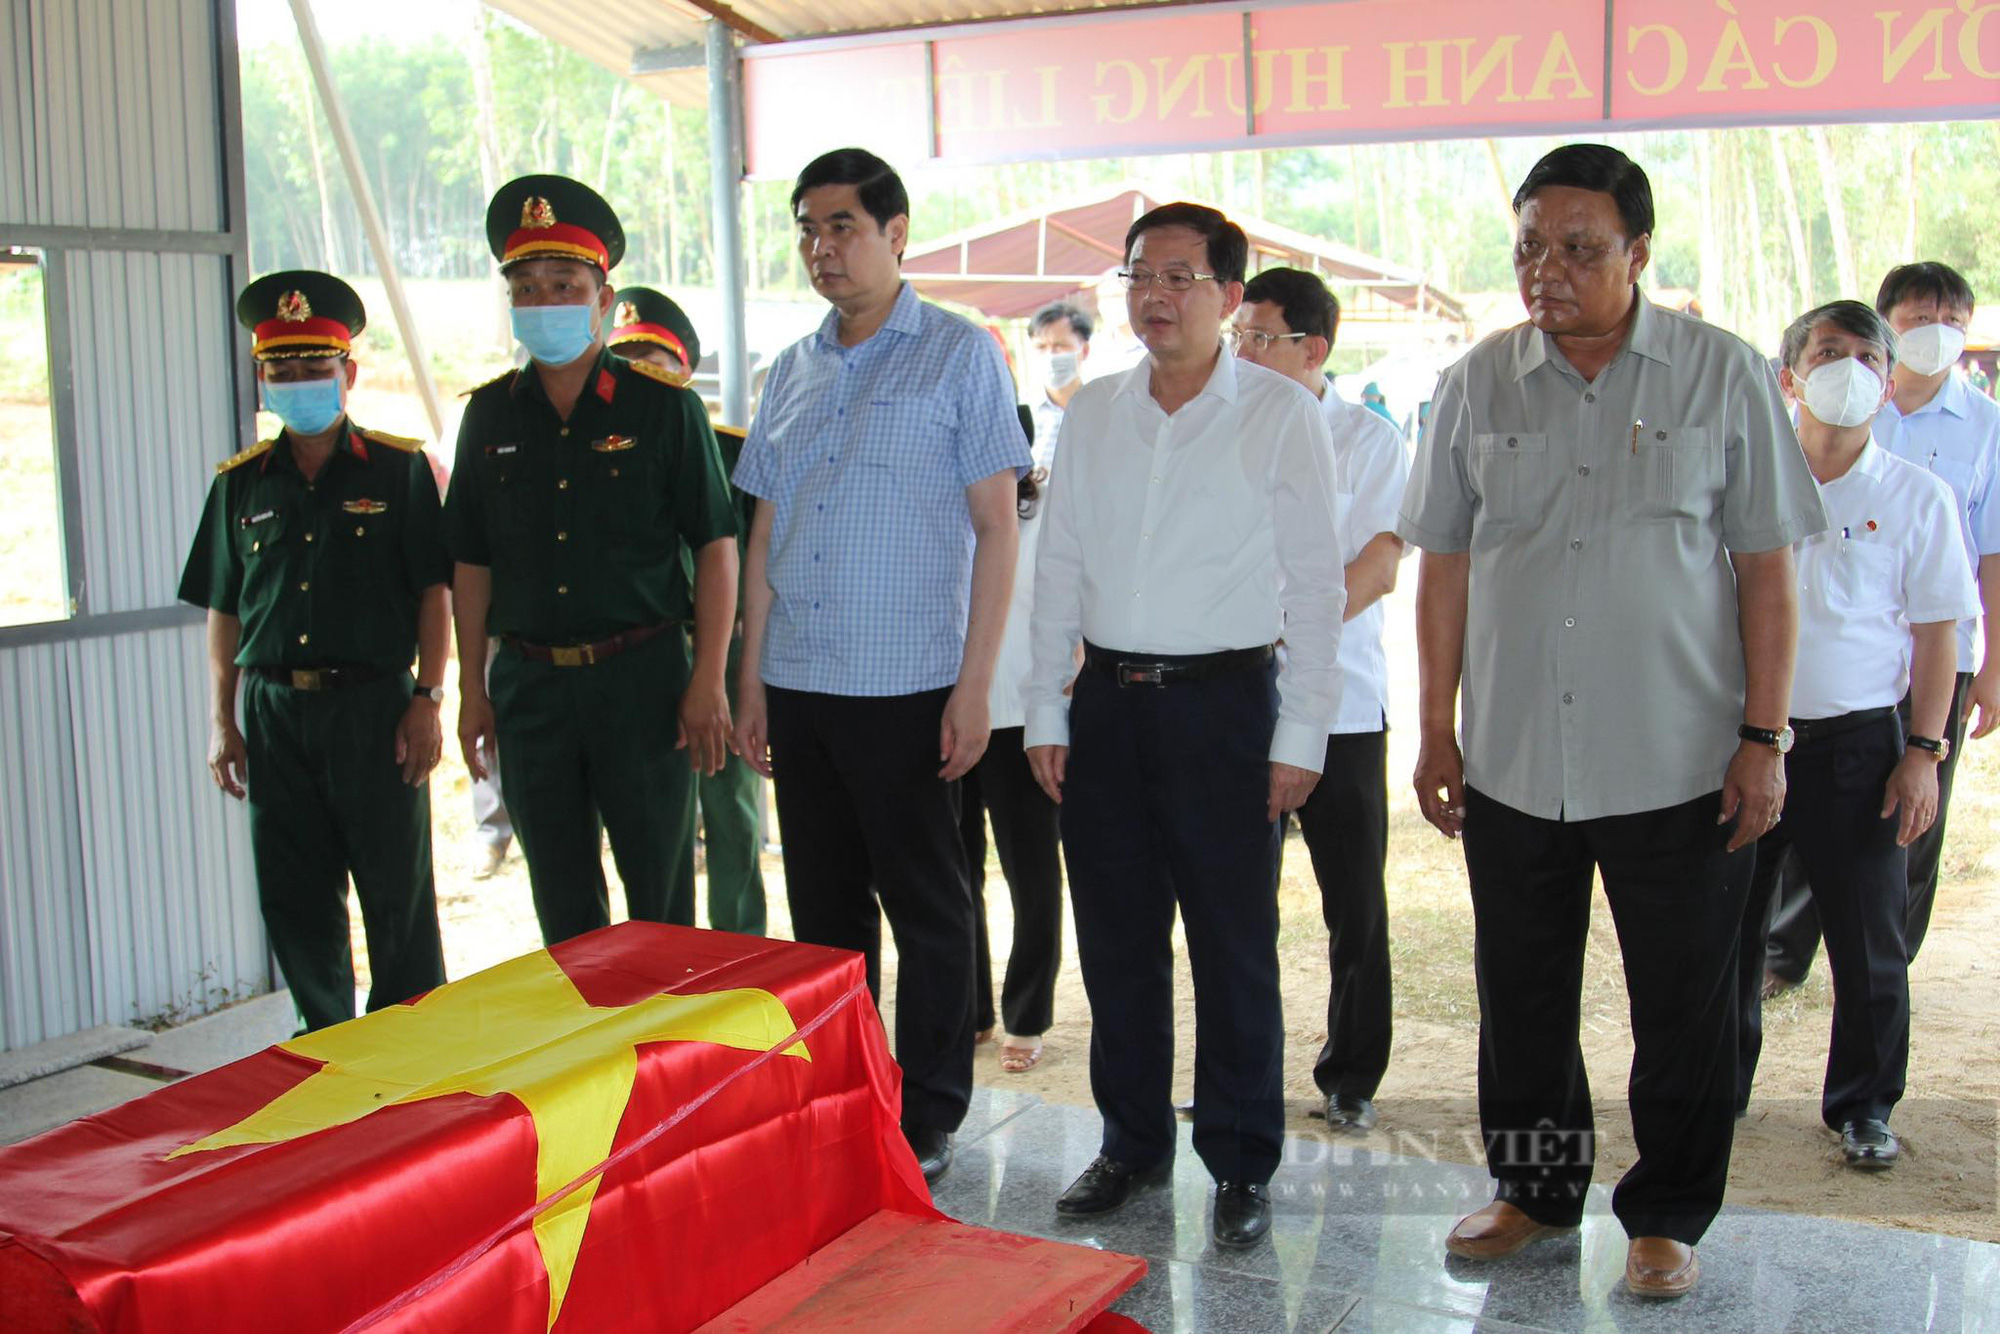 Khai quật nhiều hài cốt liệt sĩ tại hố chôn tập thể ở Bình Định  - Ảnh 2.